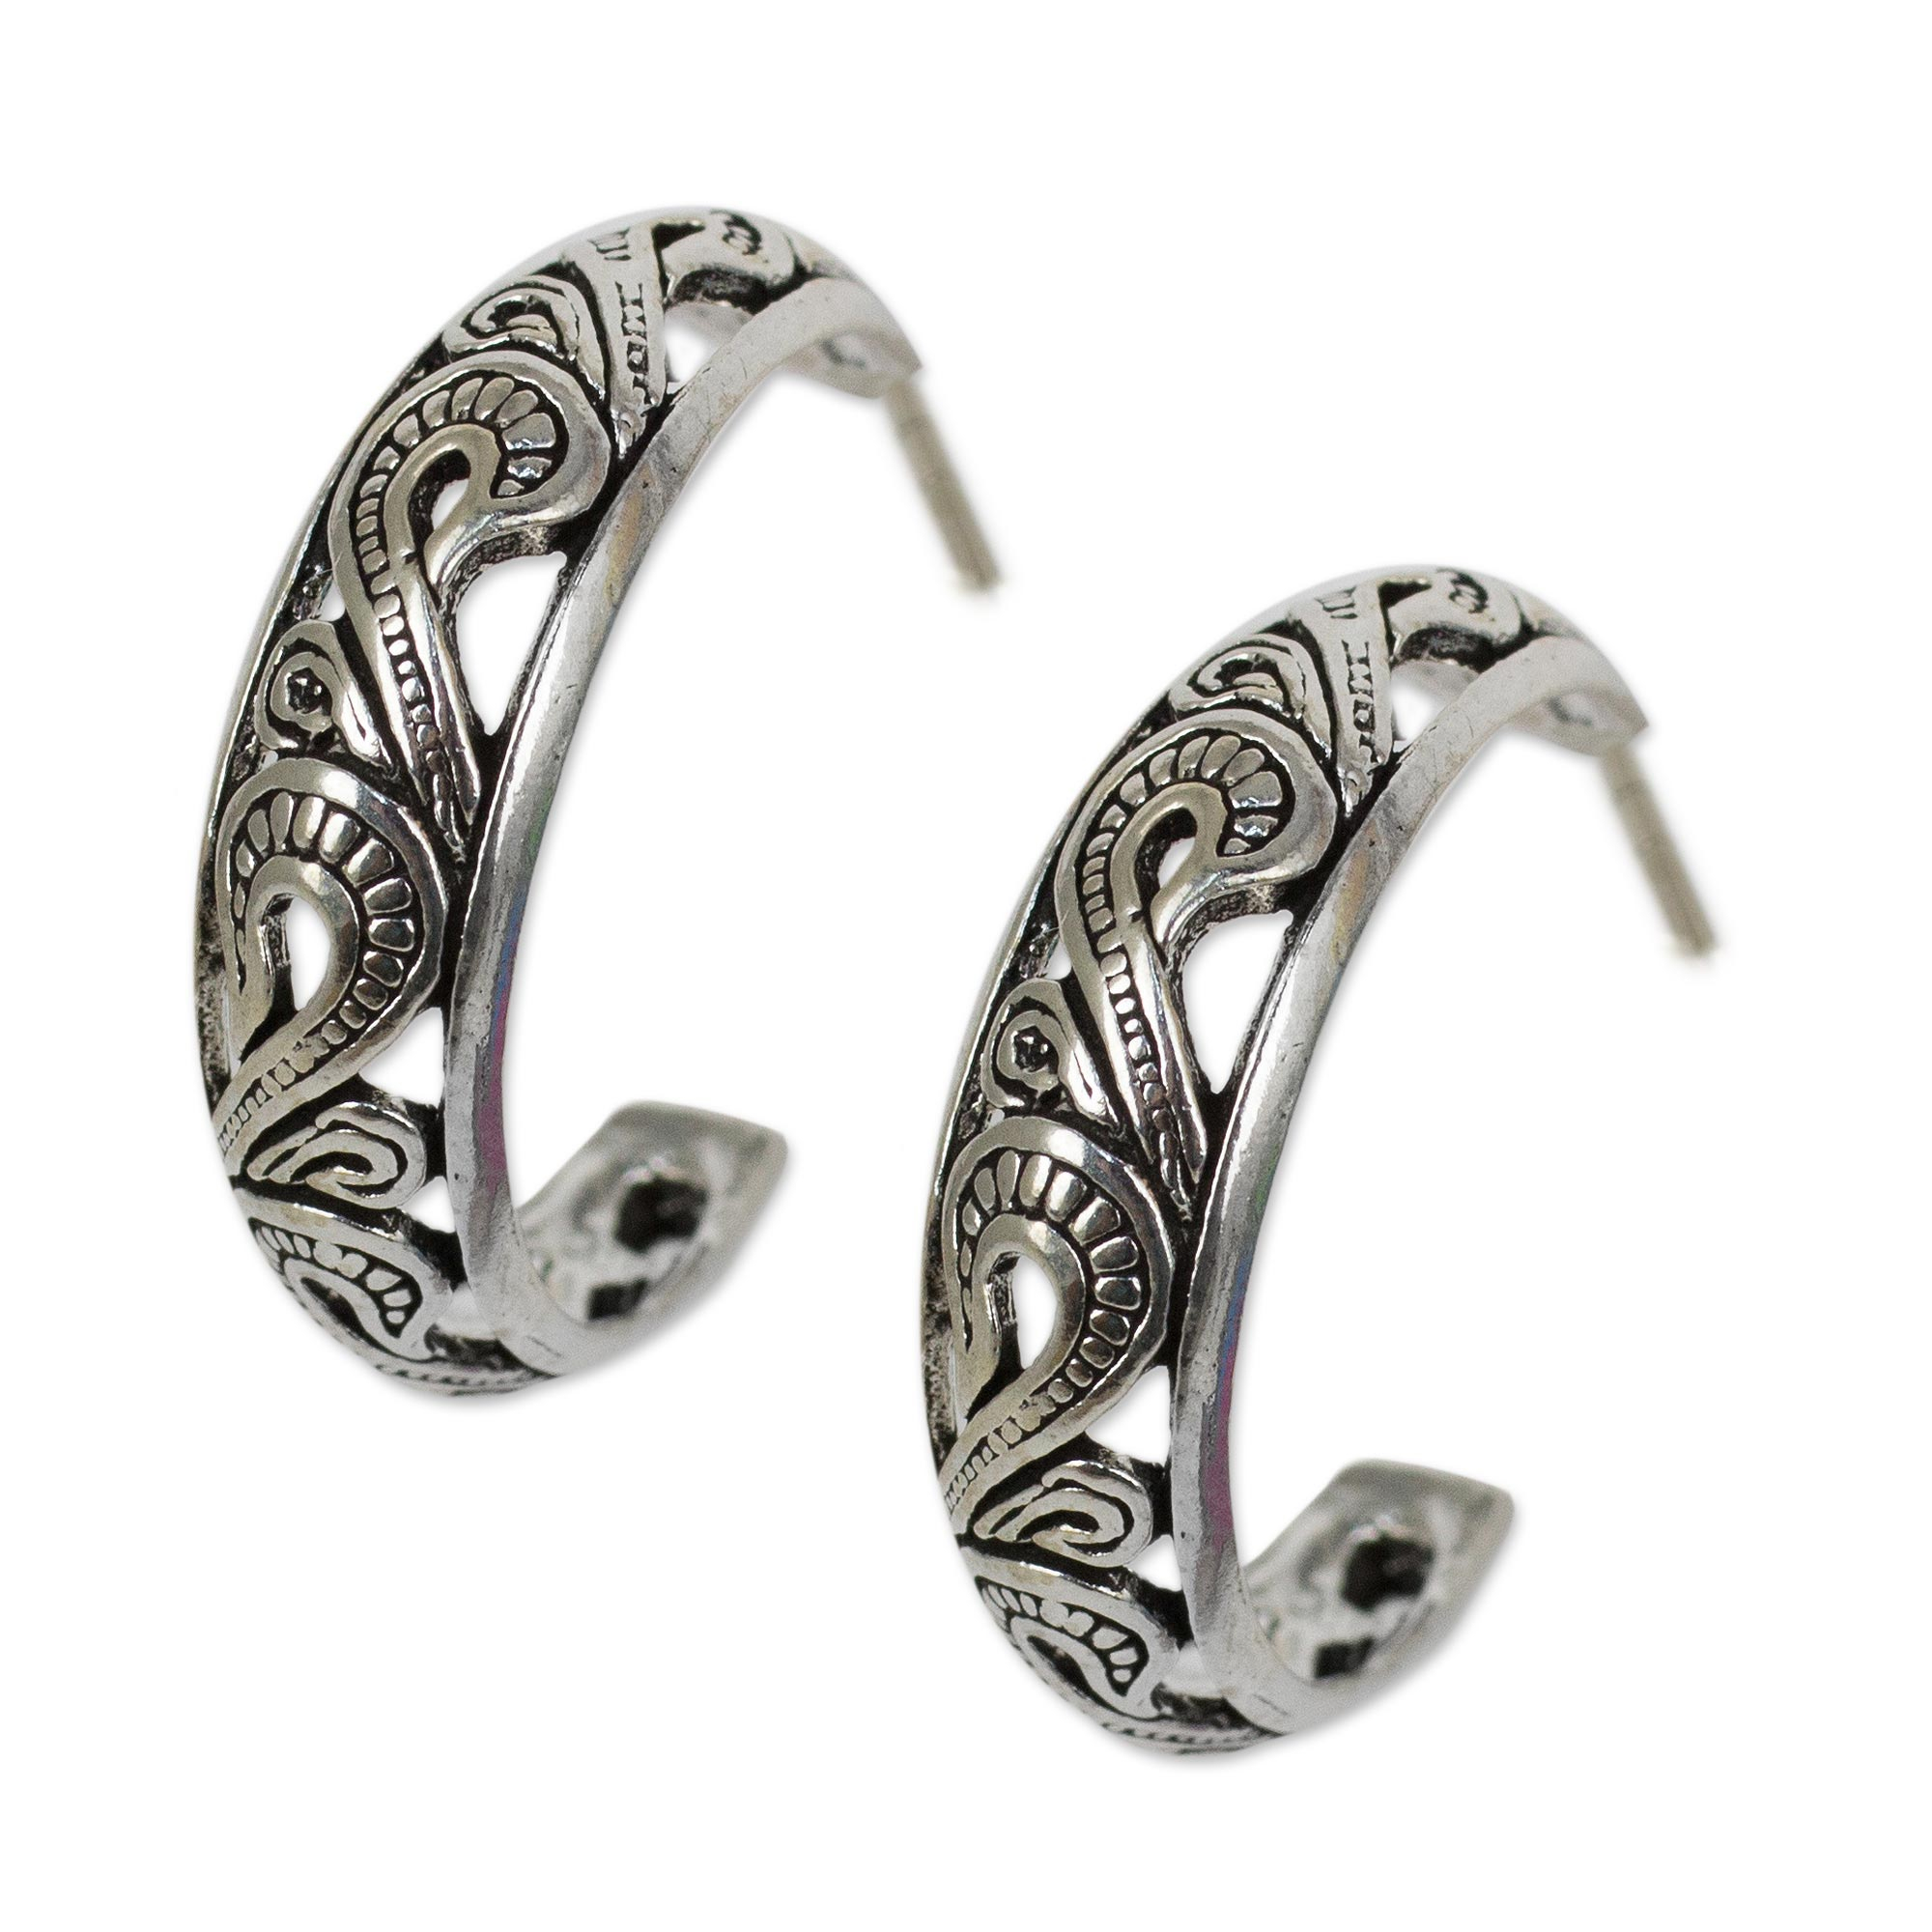 UNICEF Market | Handmade Sterling Silver Half Hoop Earrings - Moon in ...